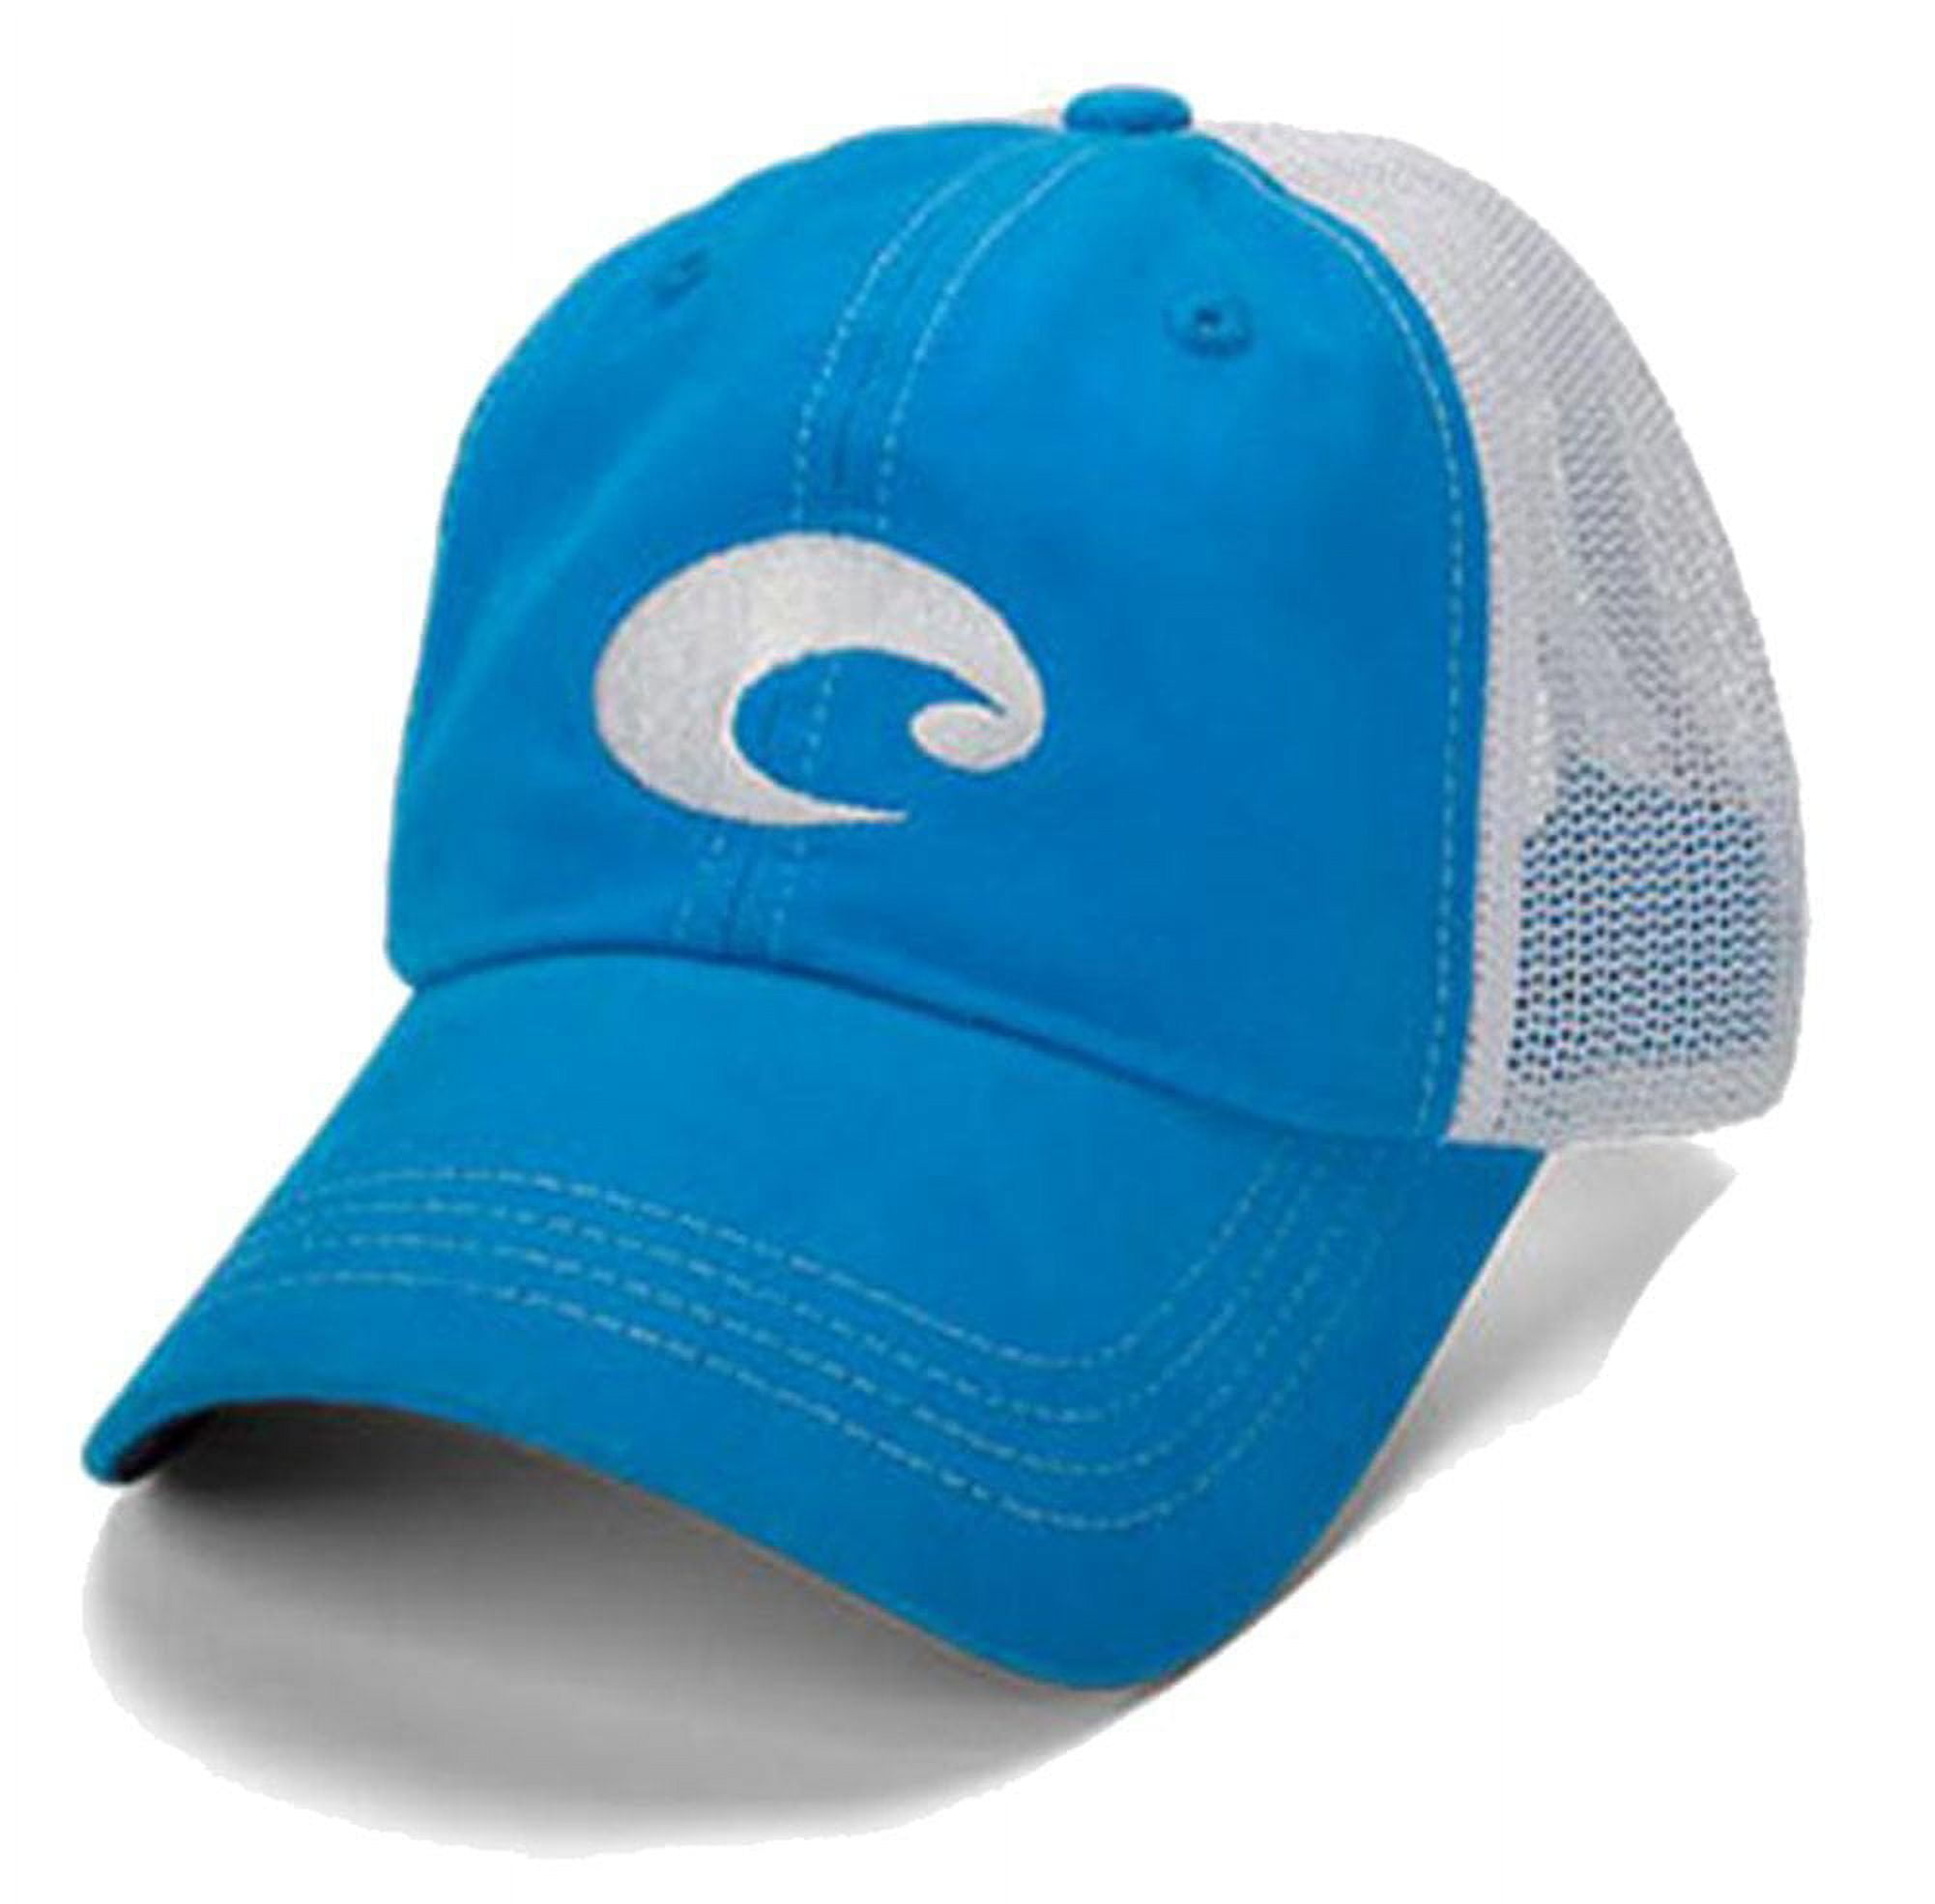 Costa Del Mar Mesh Hat, Blue - HA 04B 